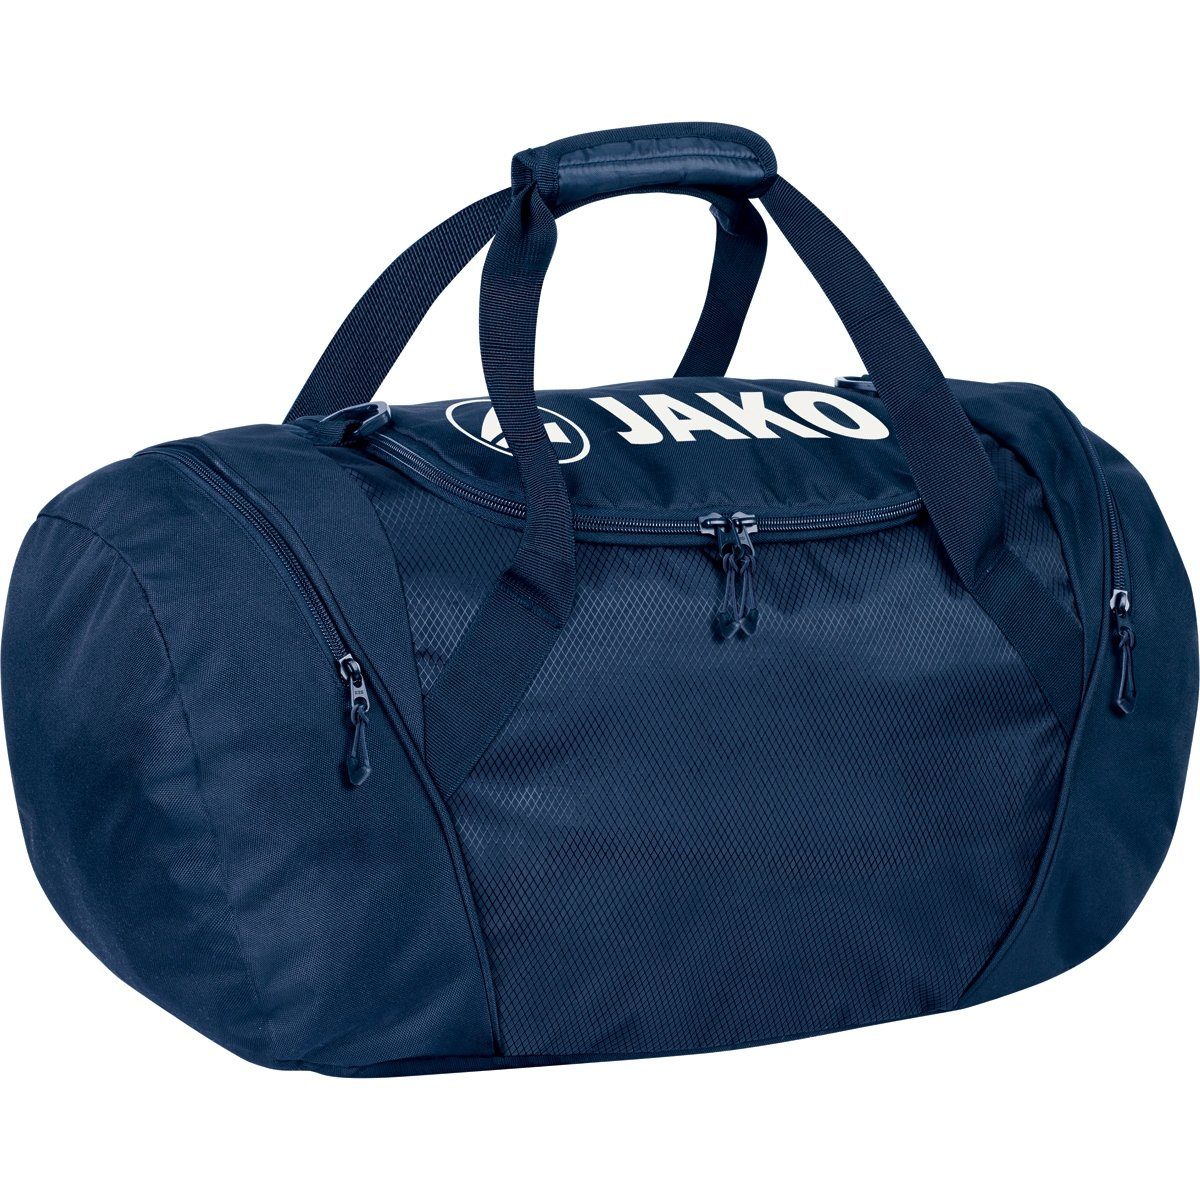 [Beliebter Standard] Jako Sporttasche Rucksack und Sporttasche 1989 09 One in L) - (Größe: marine blau